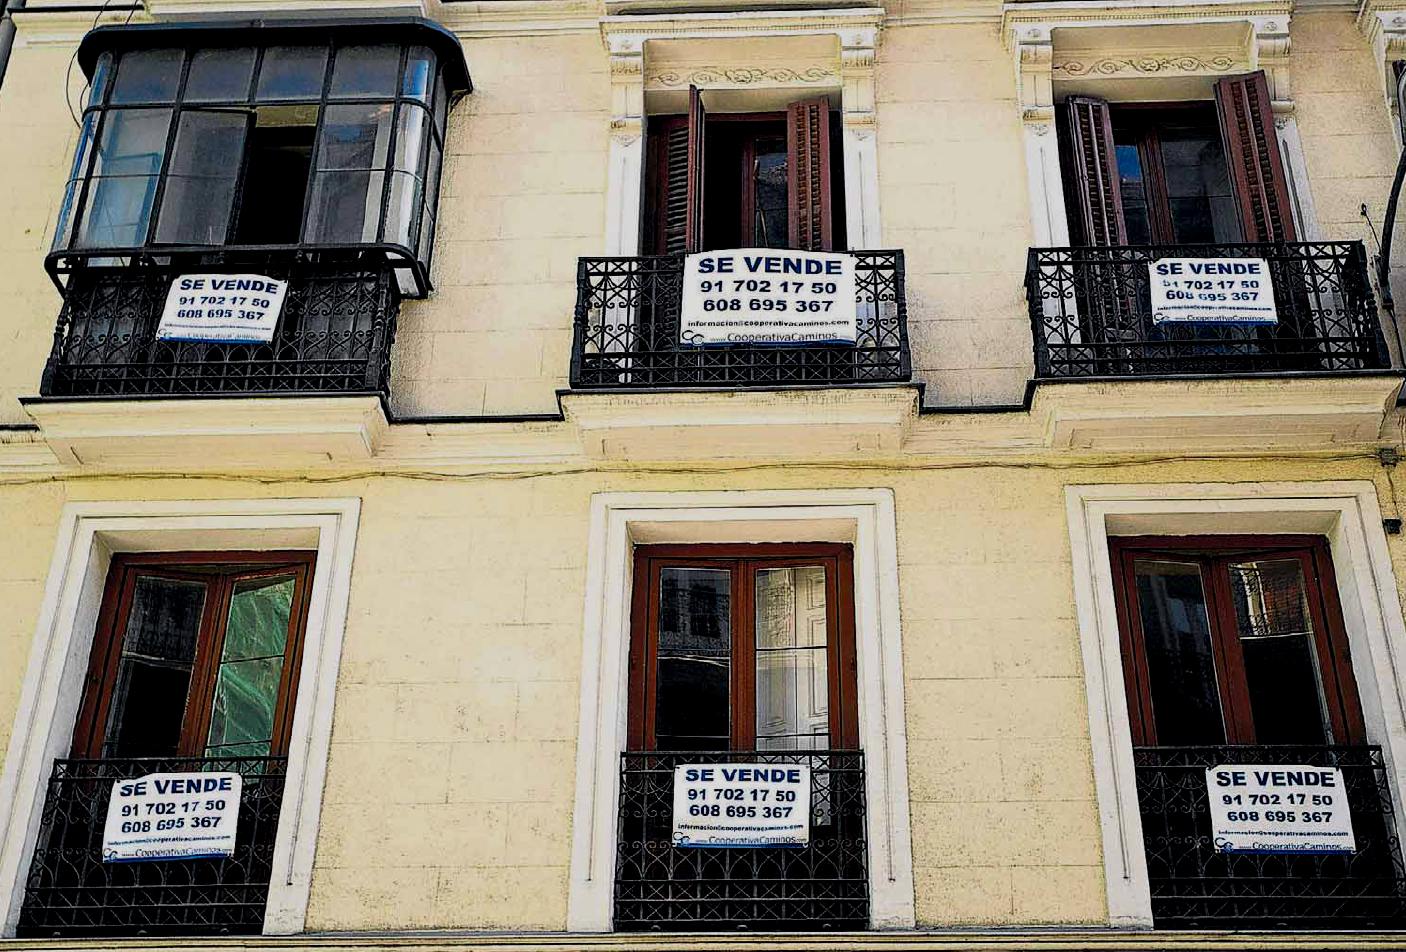 Madrid (Spagna), famiglie sfrattate per non poter pagare le ipoteche, le cui case svendute a prezzi di 10 anni fa'; fonte Hanna